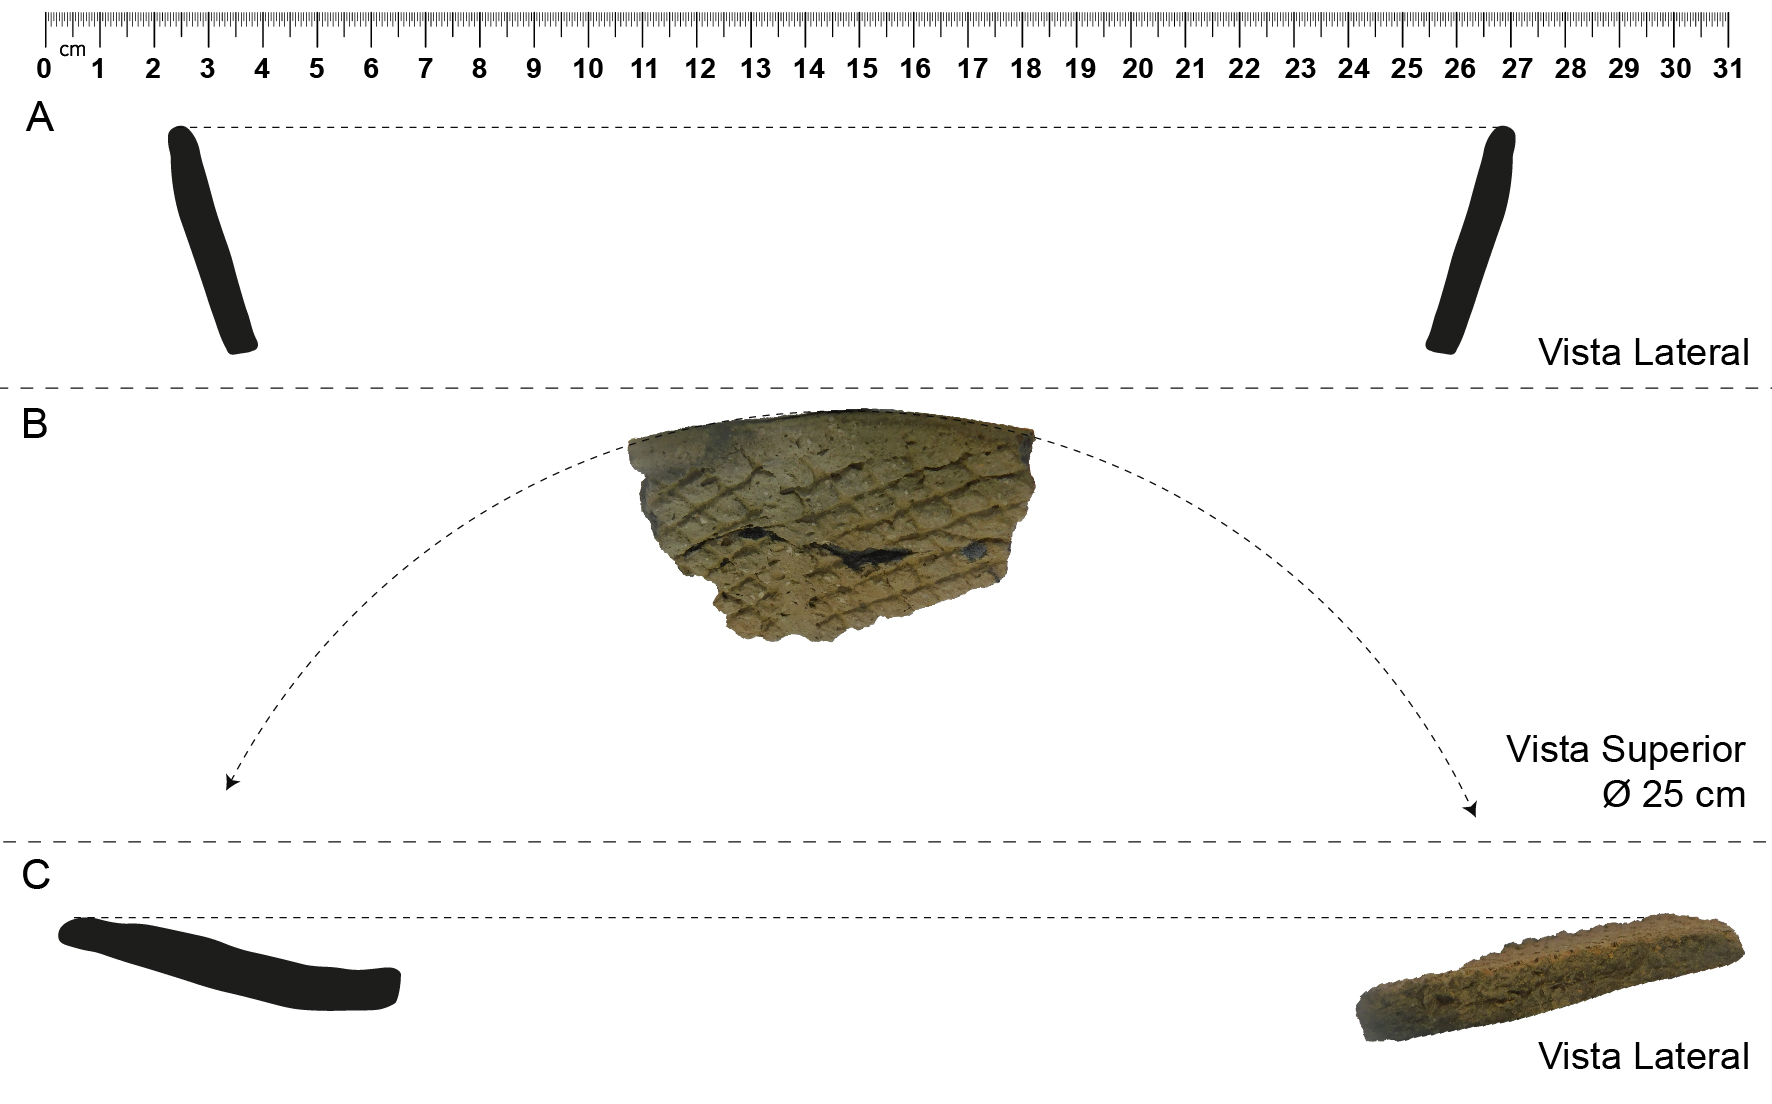 Morfologías cerámicas estimadas: A) Cuenco (sitio Arroyo Cululú 1); B) Cuenco (sitio Arroyo Cululú 1); C) Plato (sitio Ombú de Basualdo).